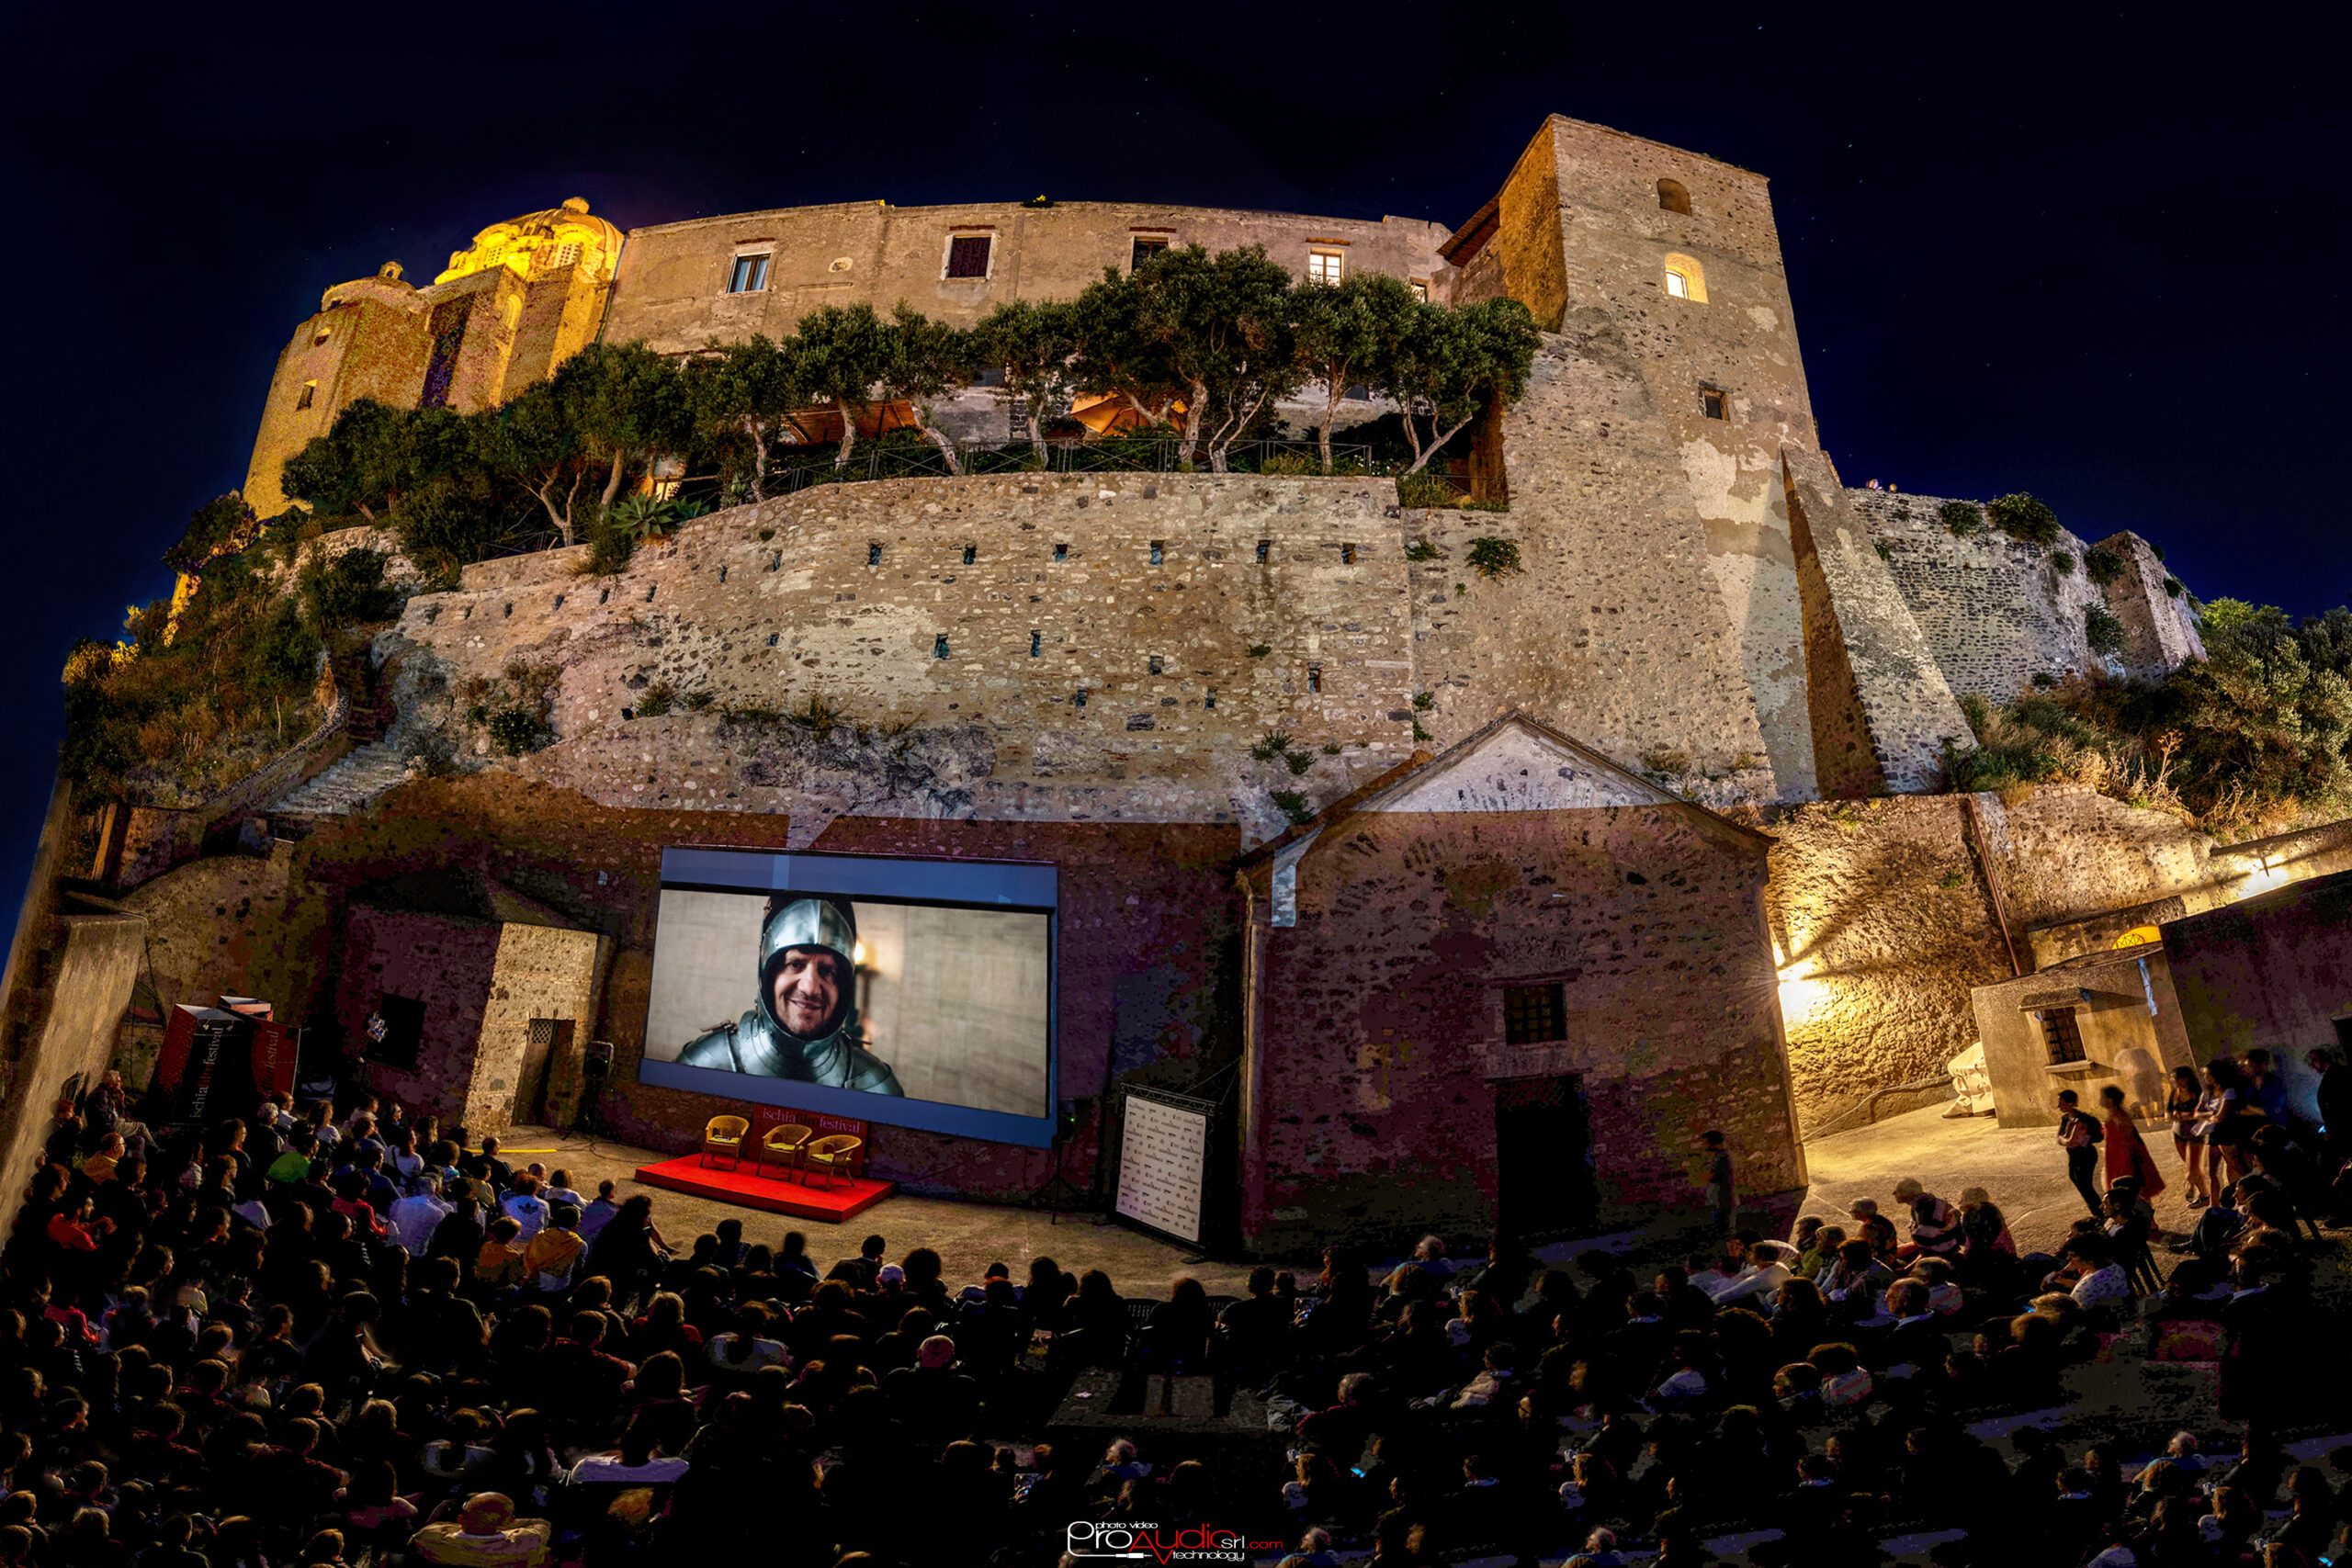 Ischia Film Festival